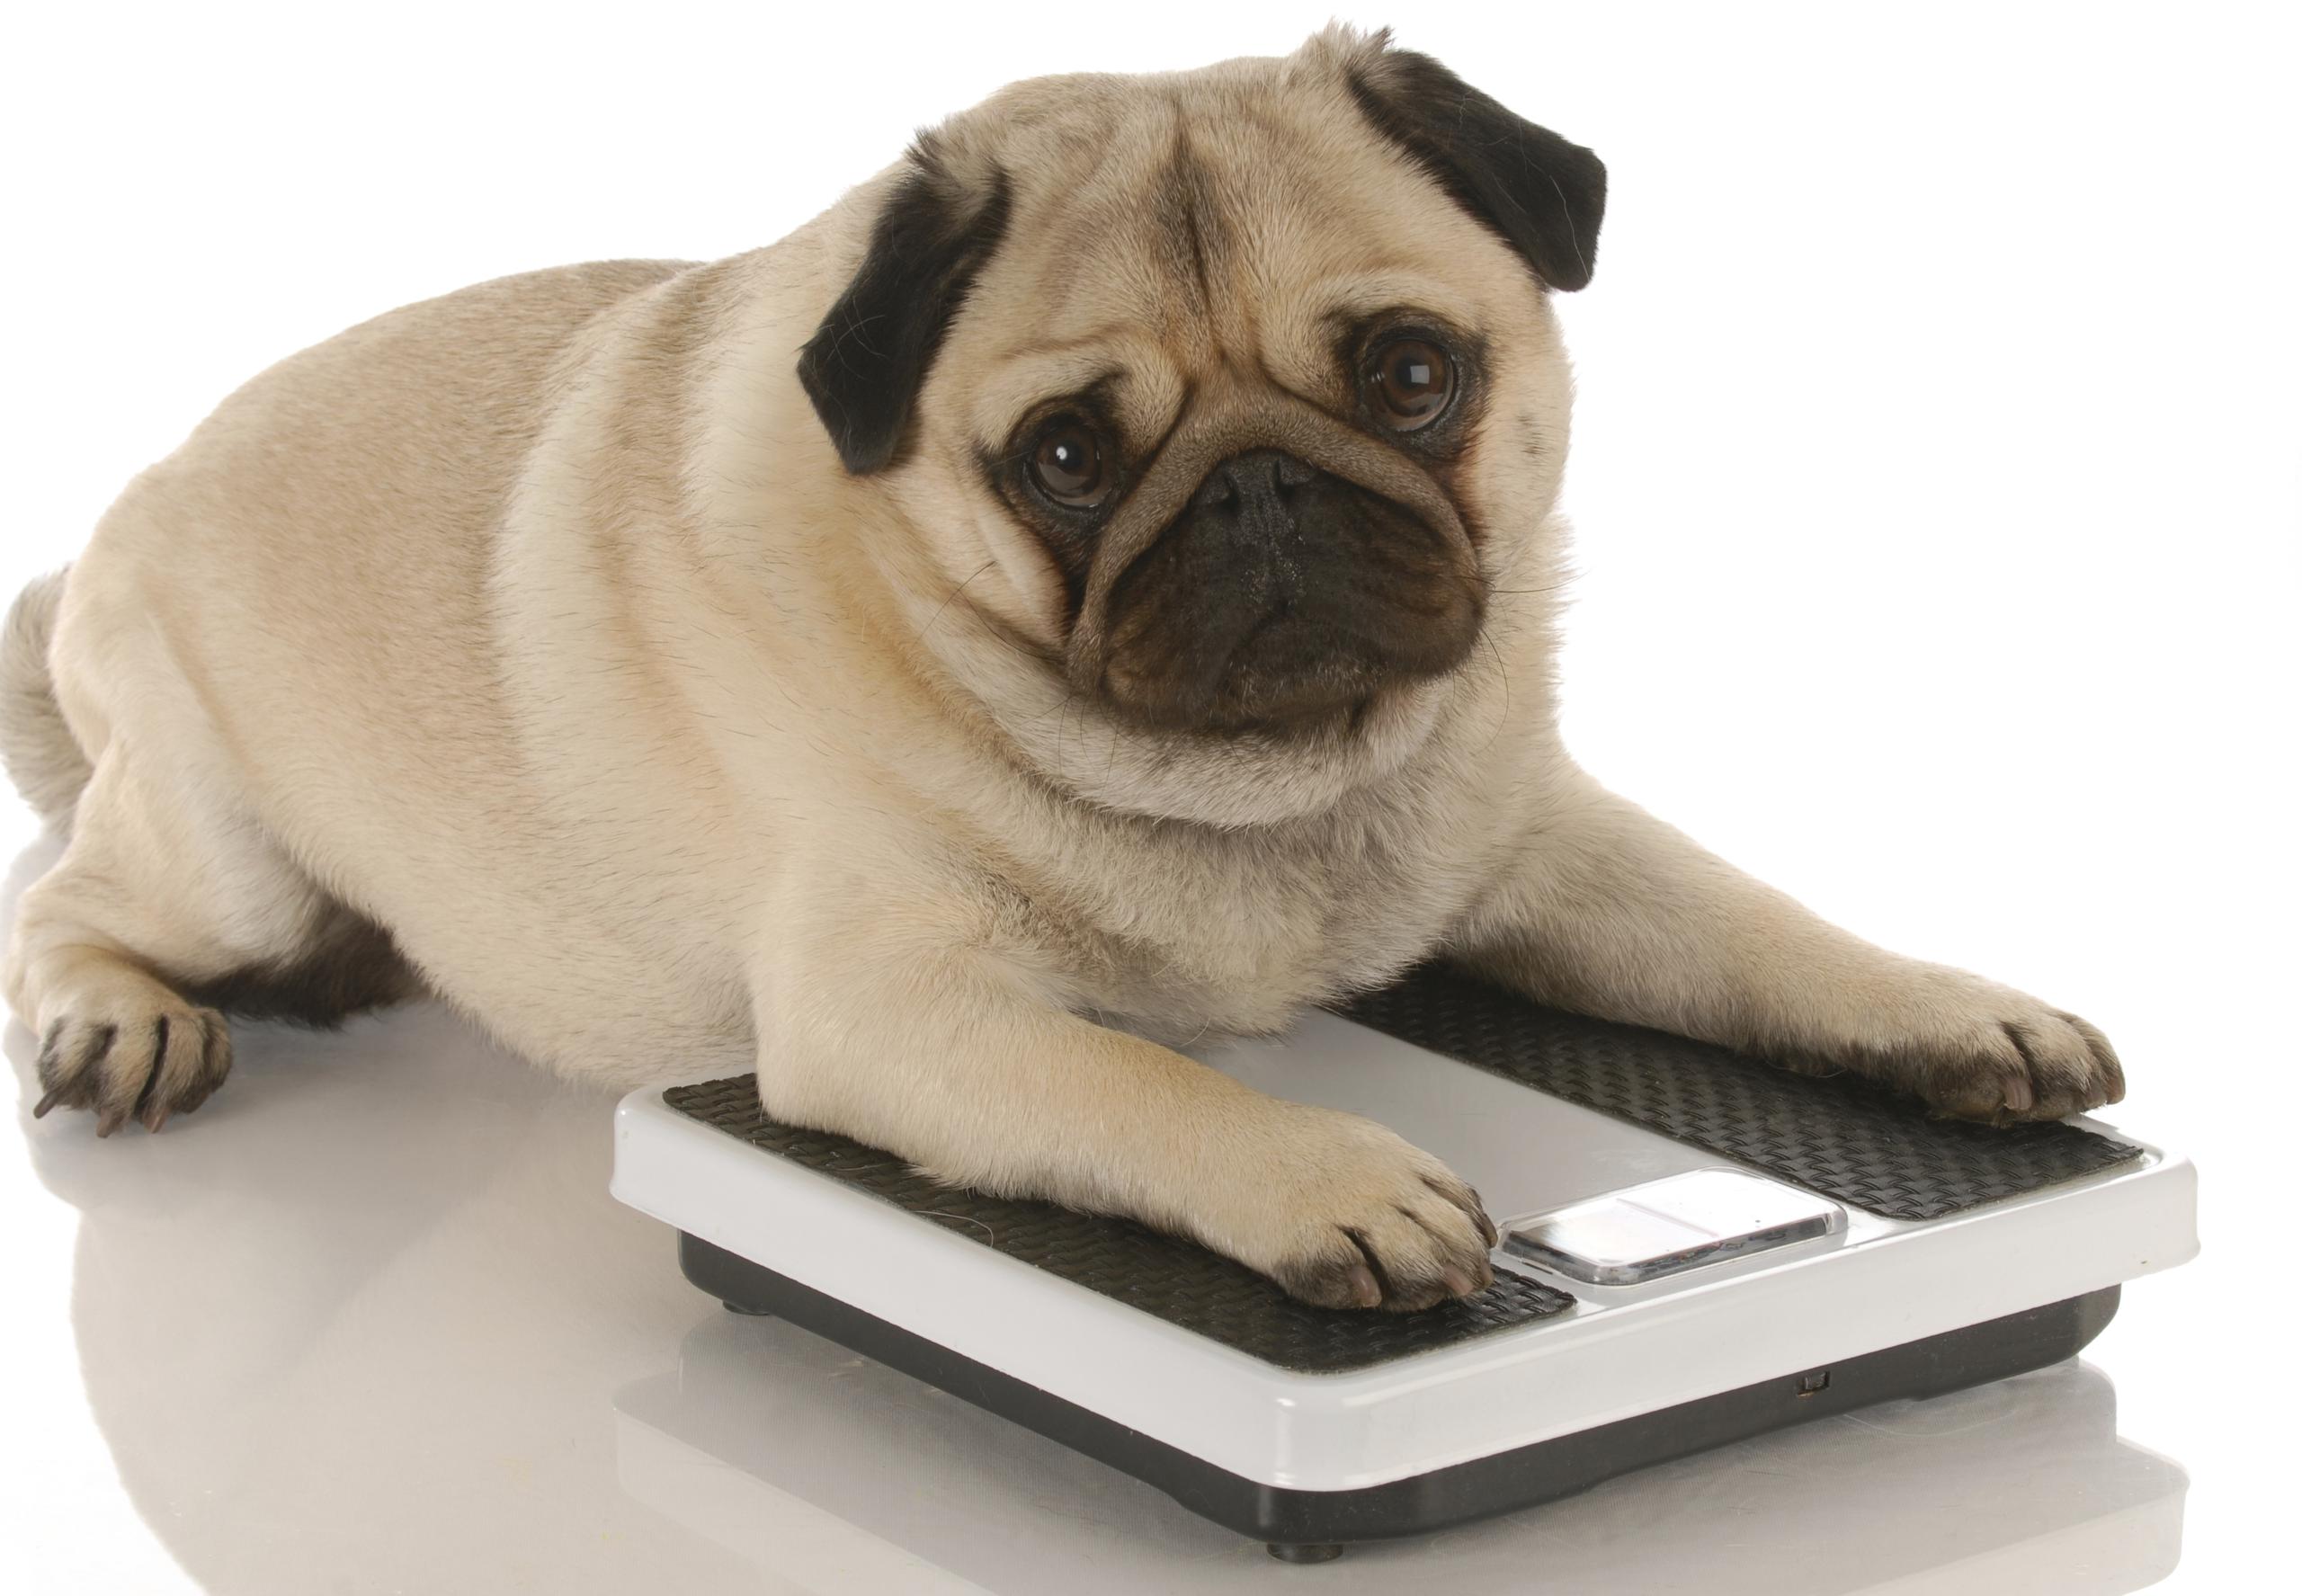 Entre las posibles causas para el sobrepeso se encuentra la falta de actividad física y la ingesta de comida casera o sobras que no suplen las necesidades energéticas de las mascotas.